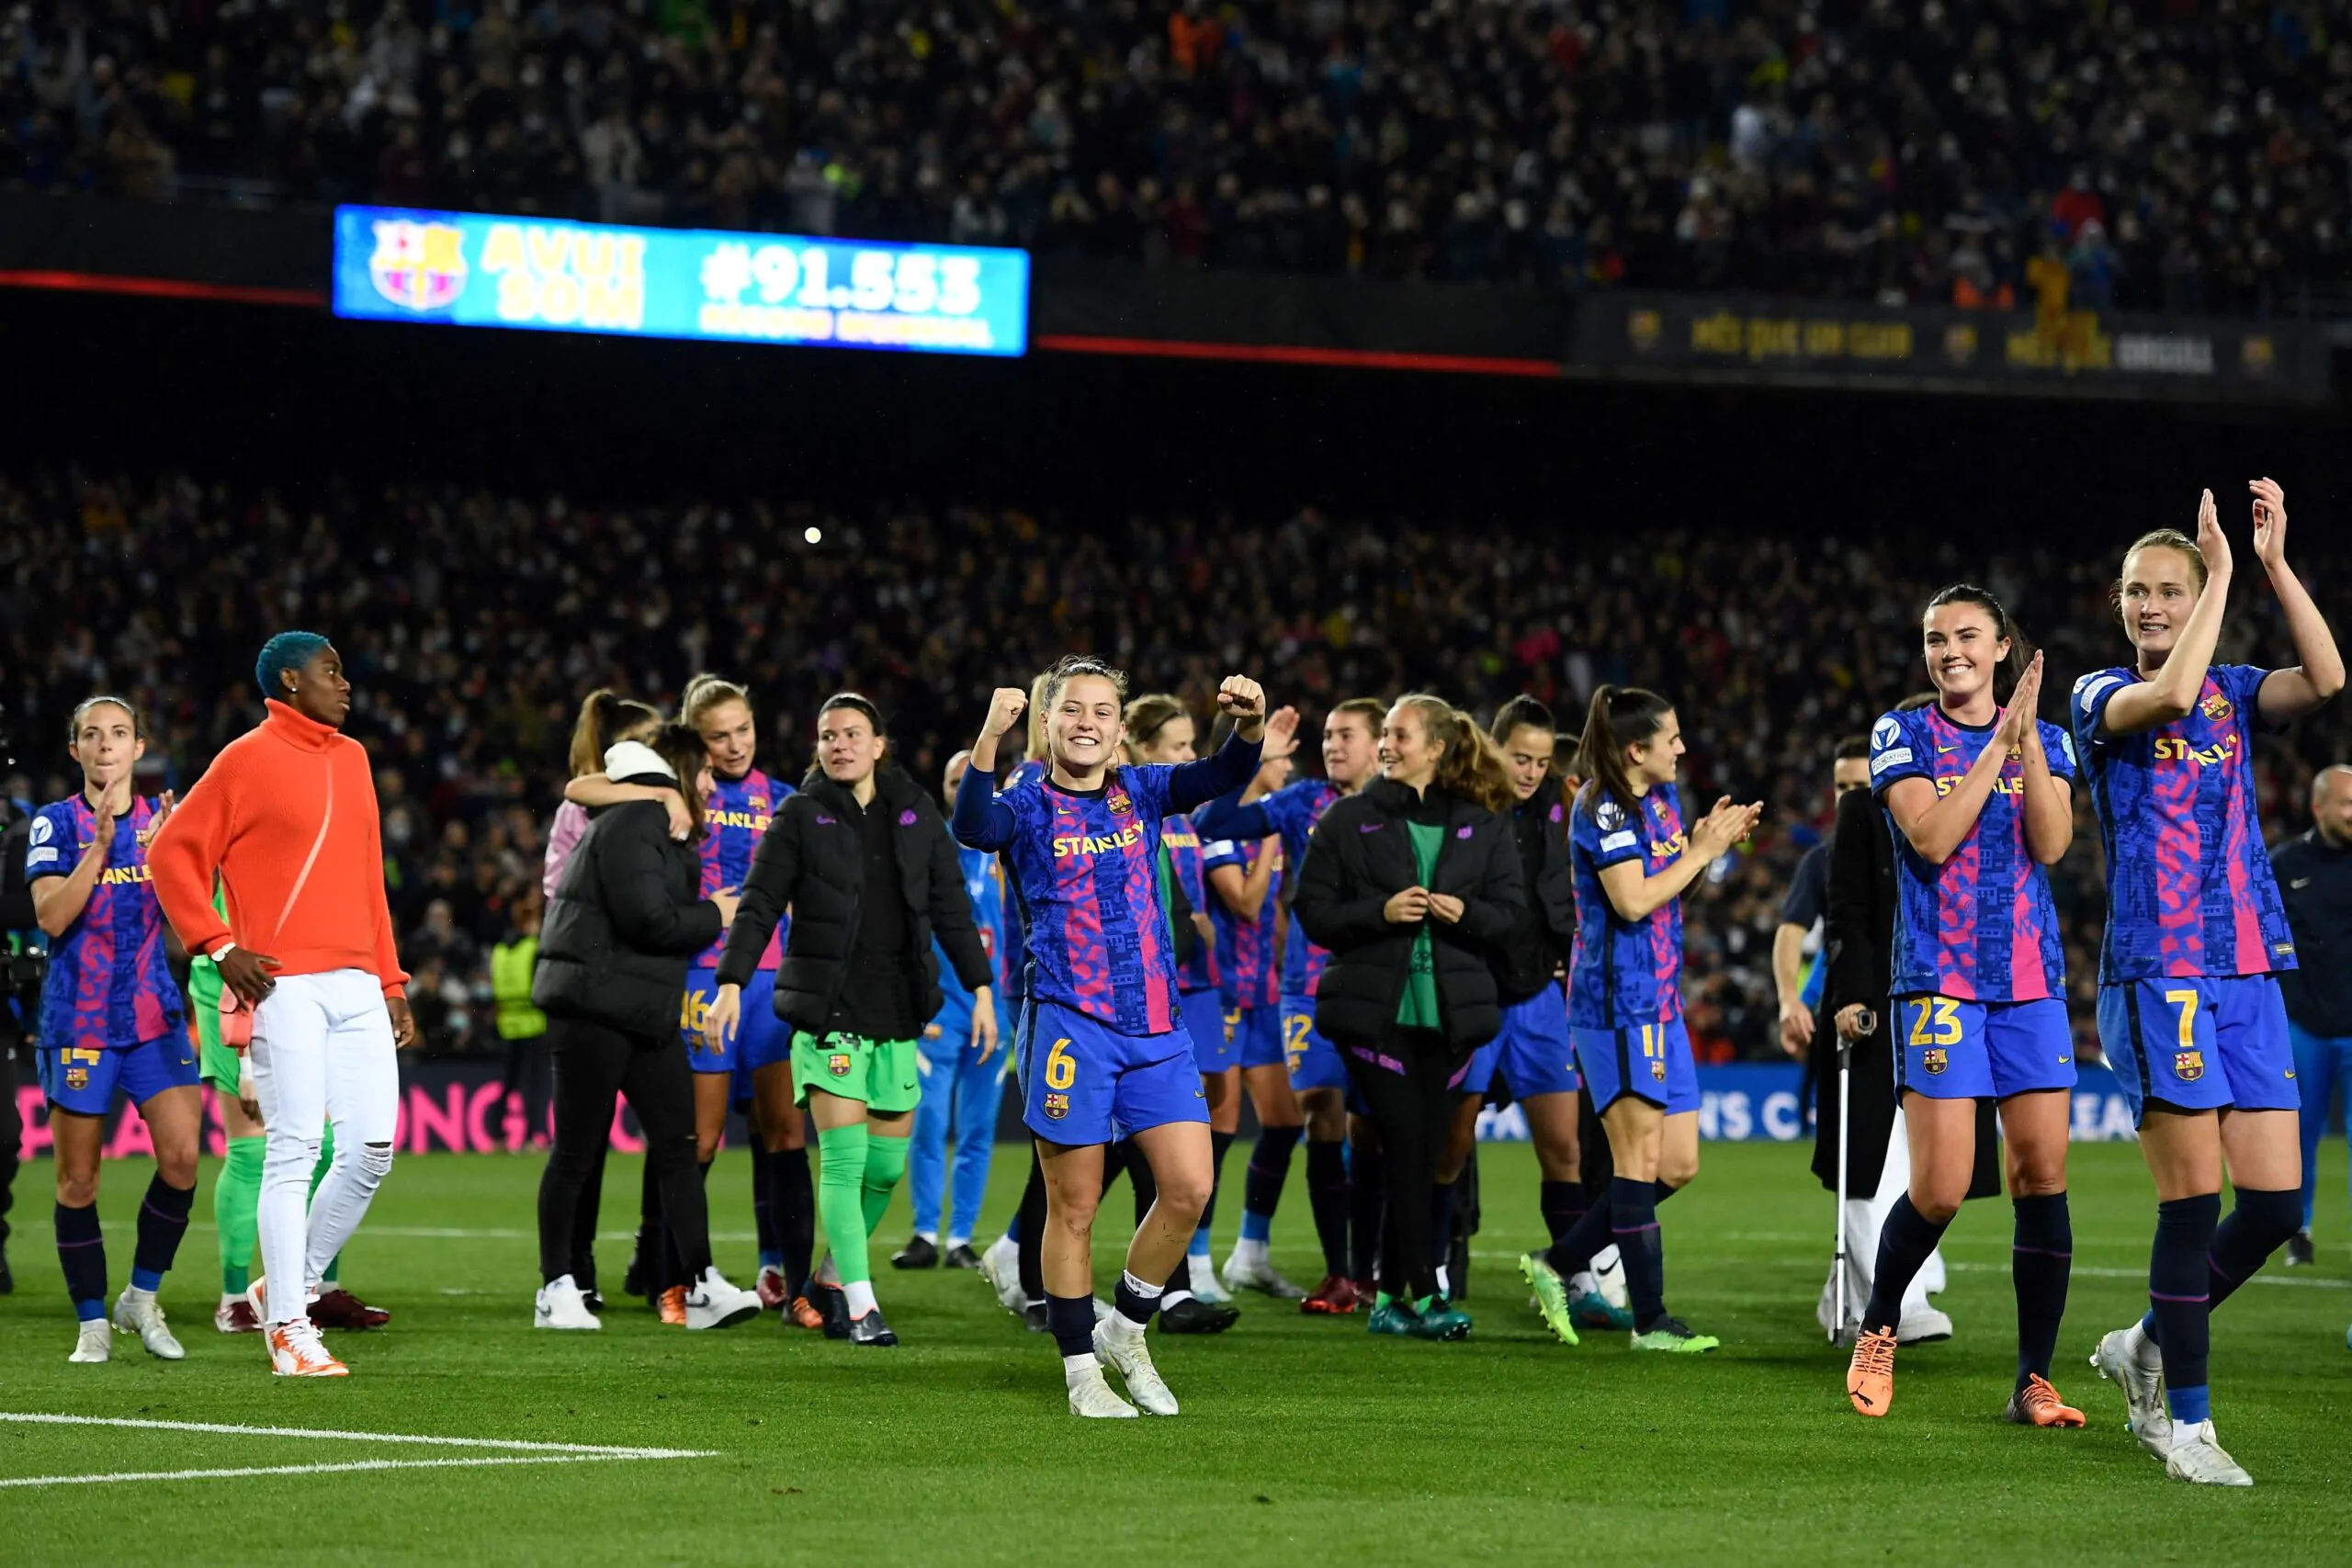 Calcio femminile, record storico: è successo al Camp Nou!